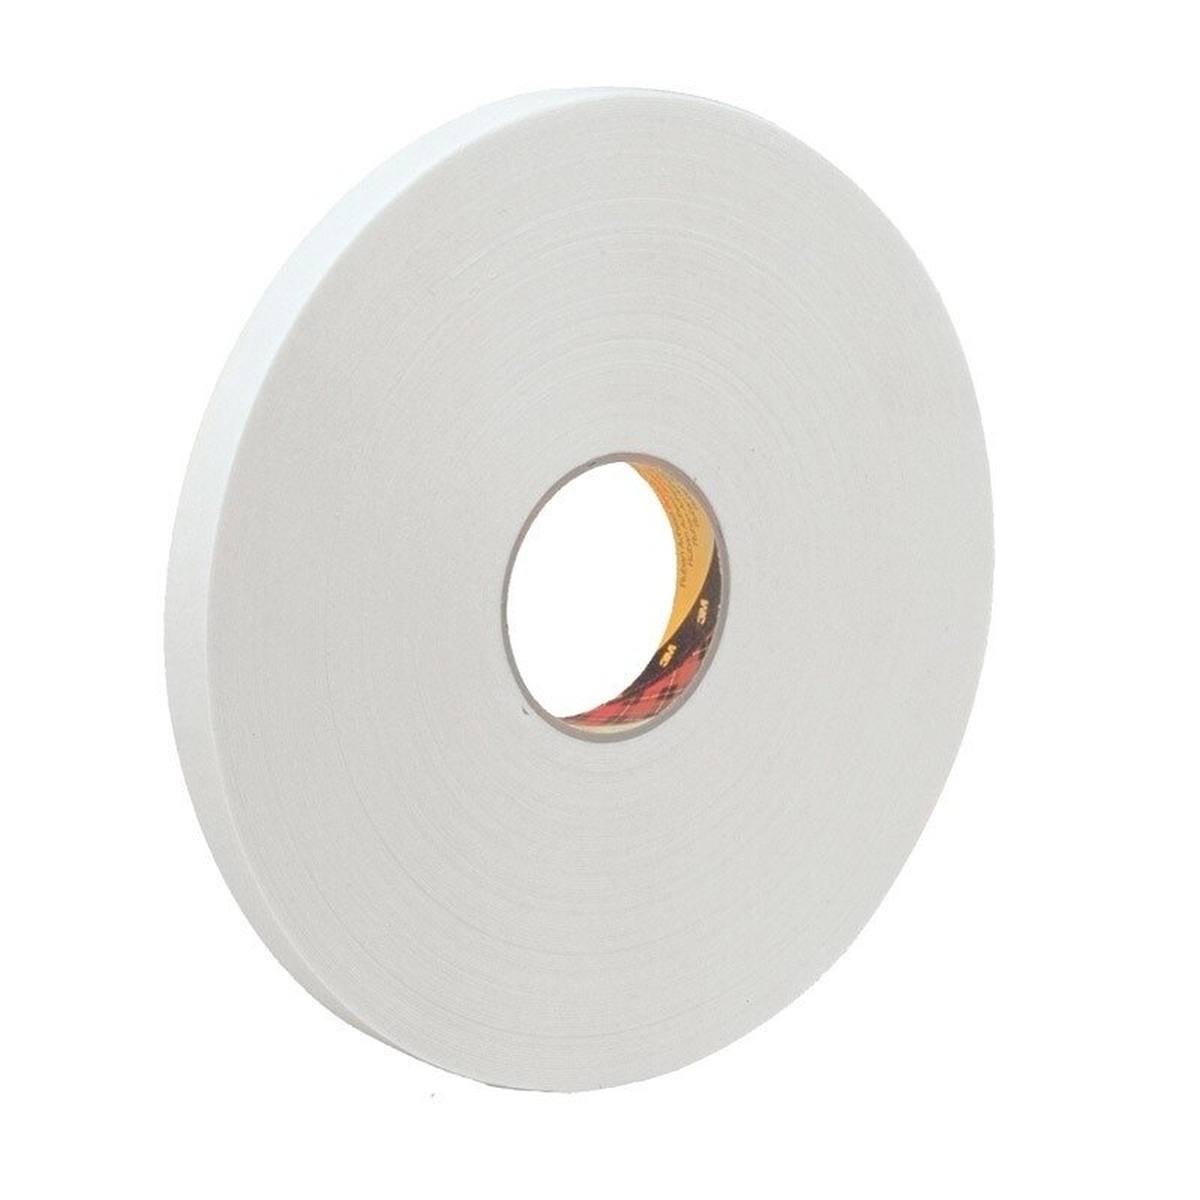 3M ruban adhésif mousse PE avec adhésif acrylique 9539, blanc, 12 mm x 66 m, 0,8 mm